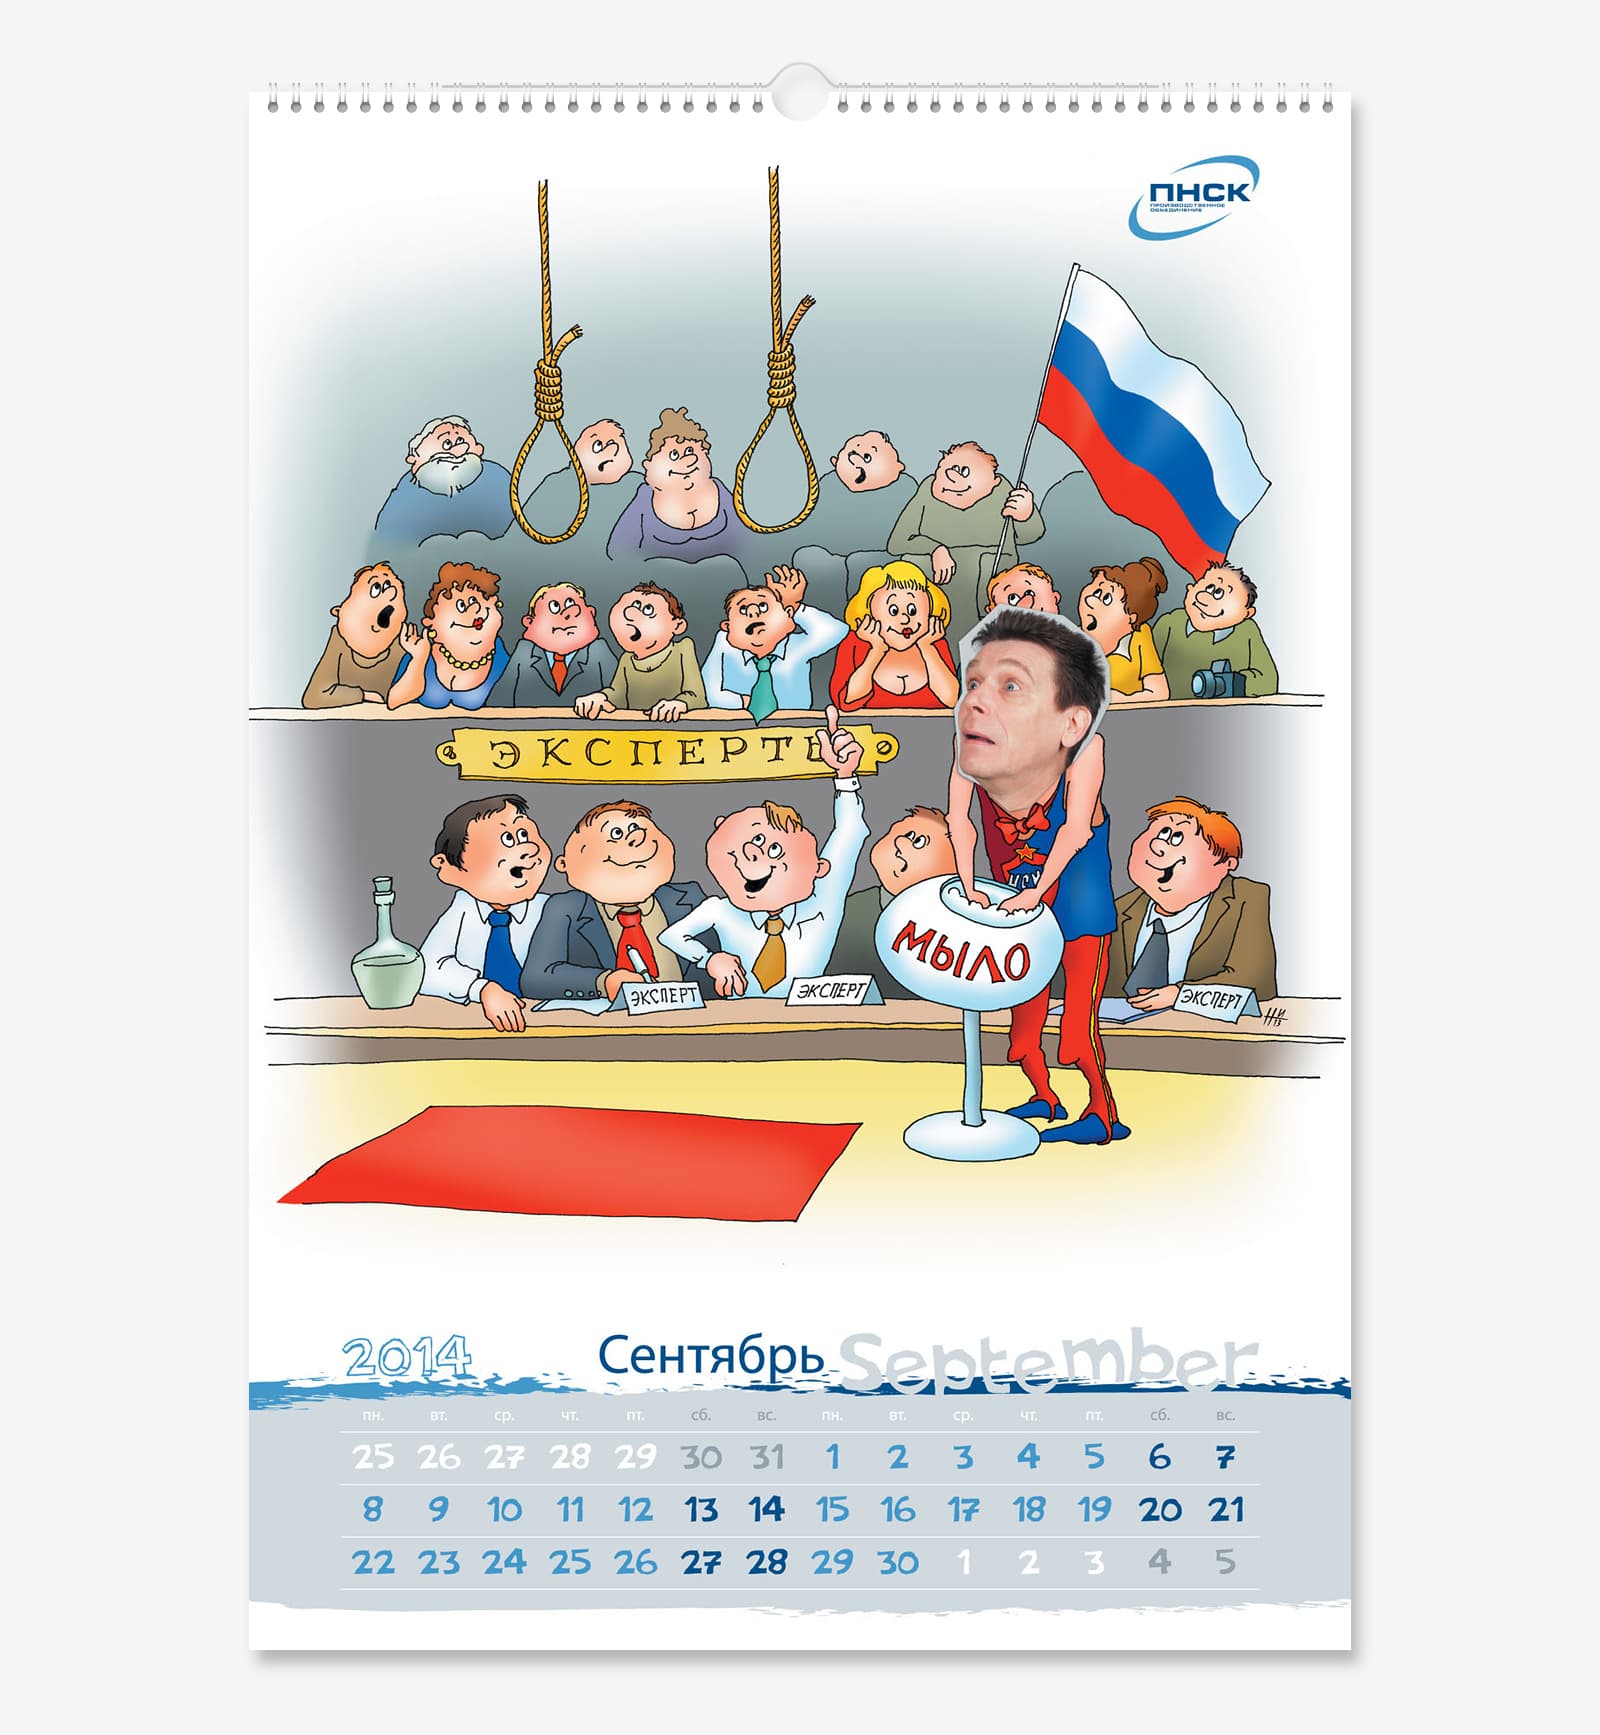 Нарисовали корпоративный календарь А3 для производственного объединения «ПНСК» на 2014 год